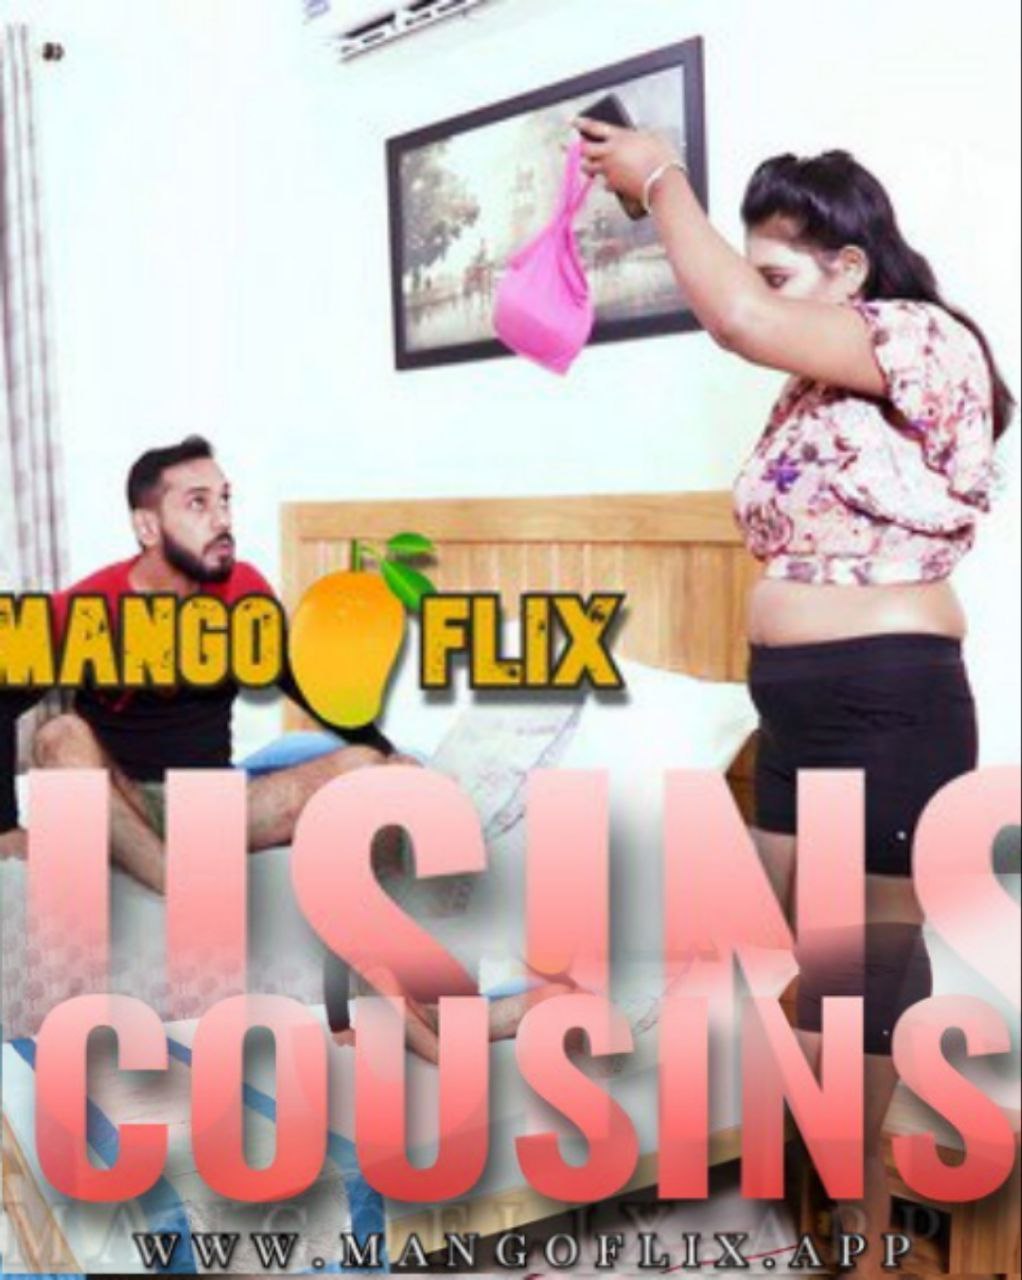 cusion mangoflix